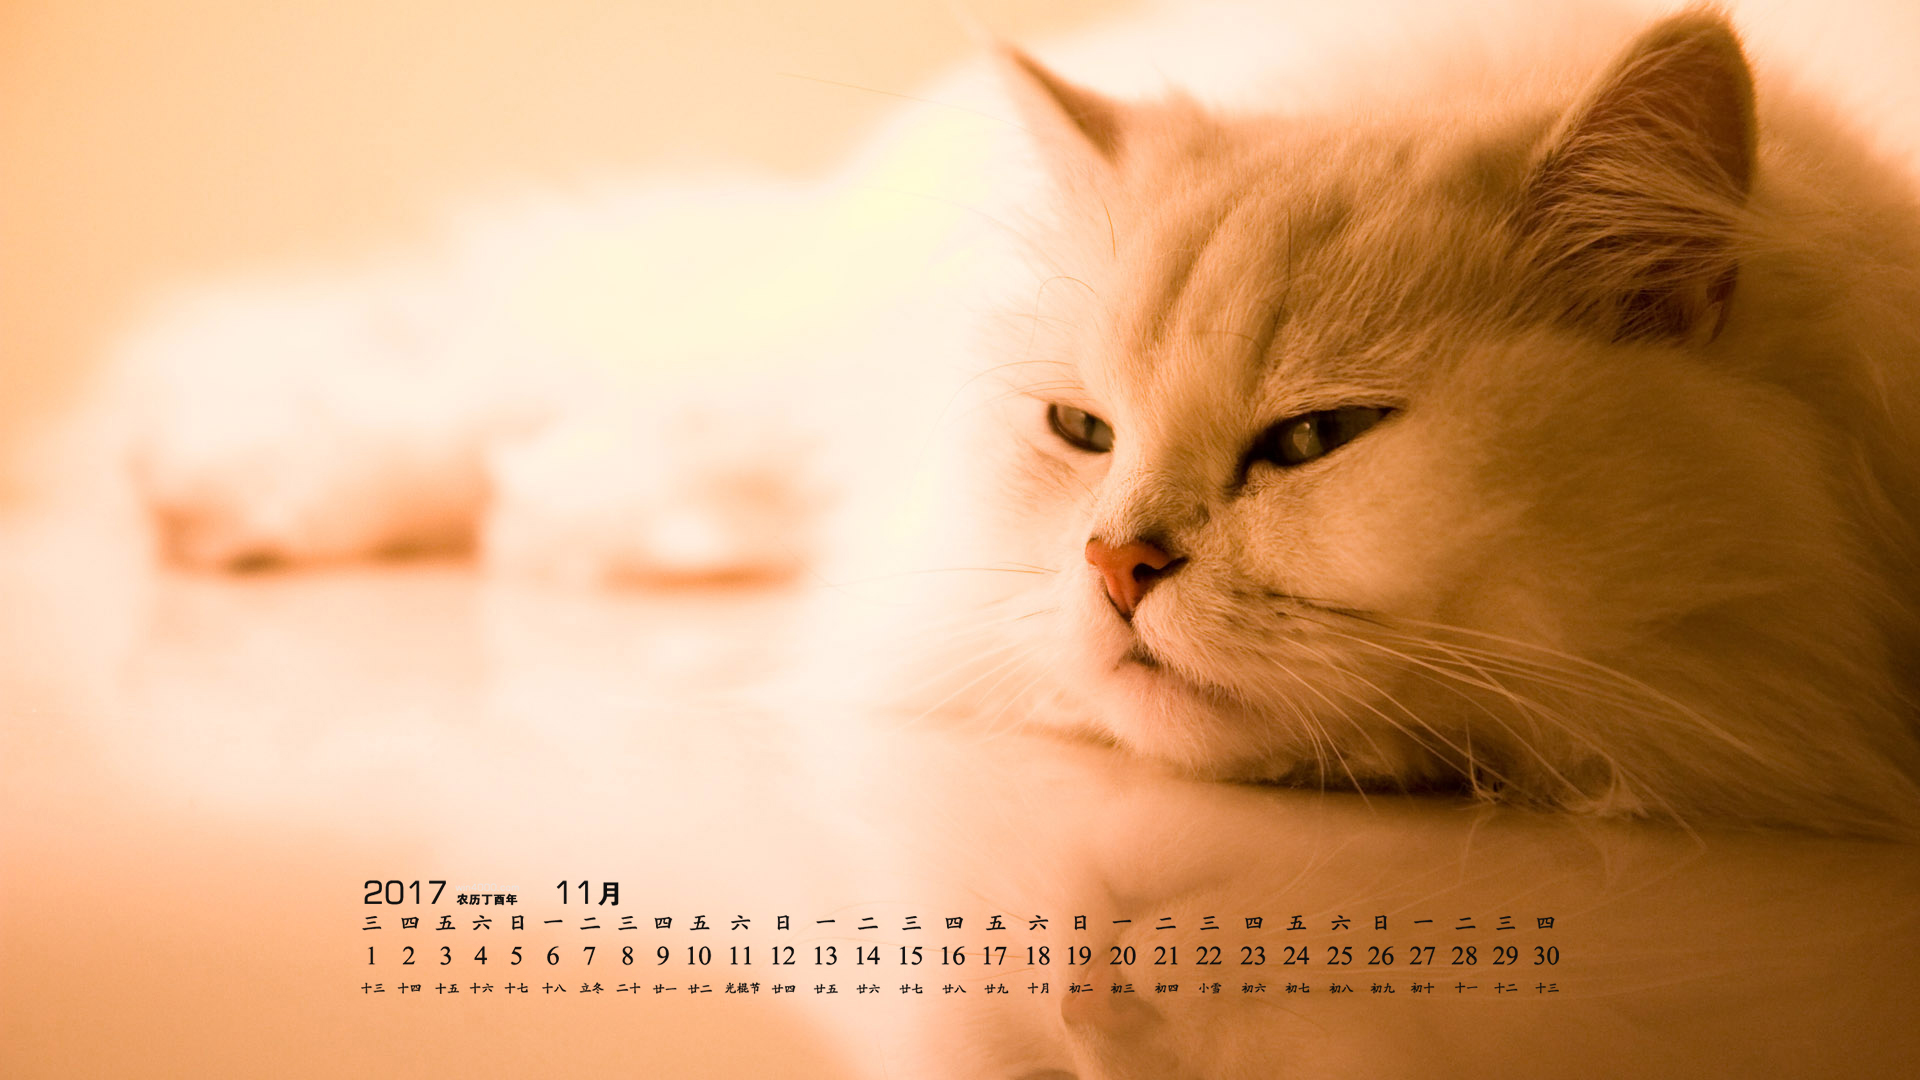 2017日历桌面壁纸高清 2017年11月可爱的宠物猫咪高清日历壁纸